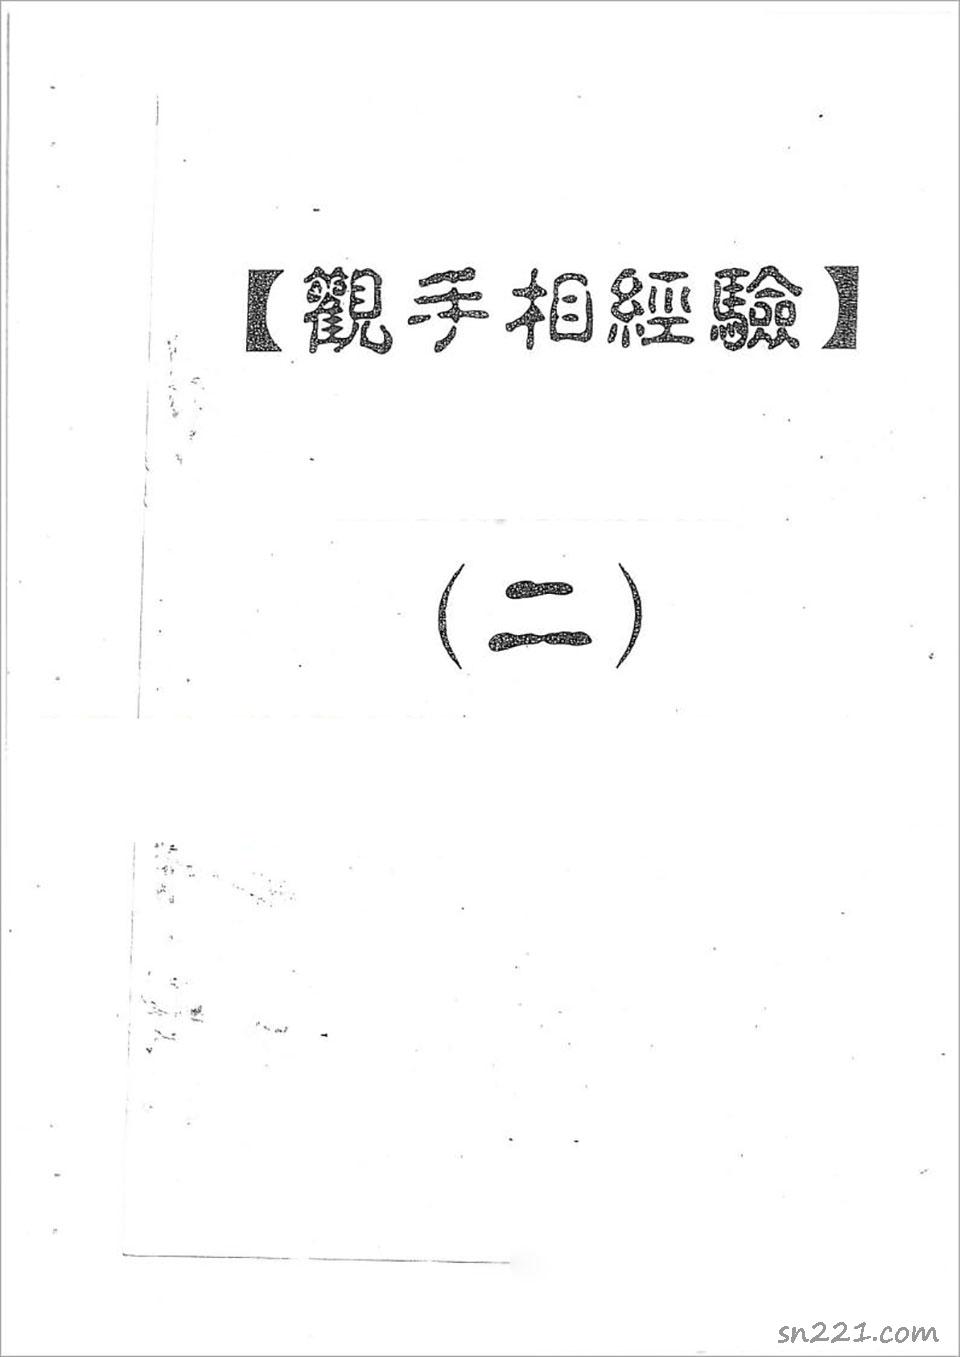 何培甫-大眾相法實戰授徒手寫資料2（50頁）.pdf